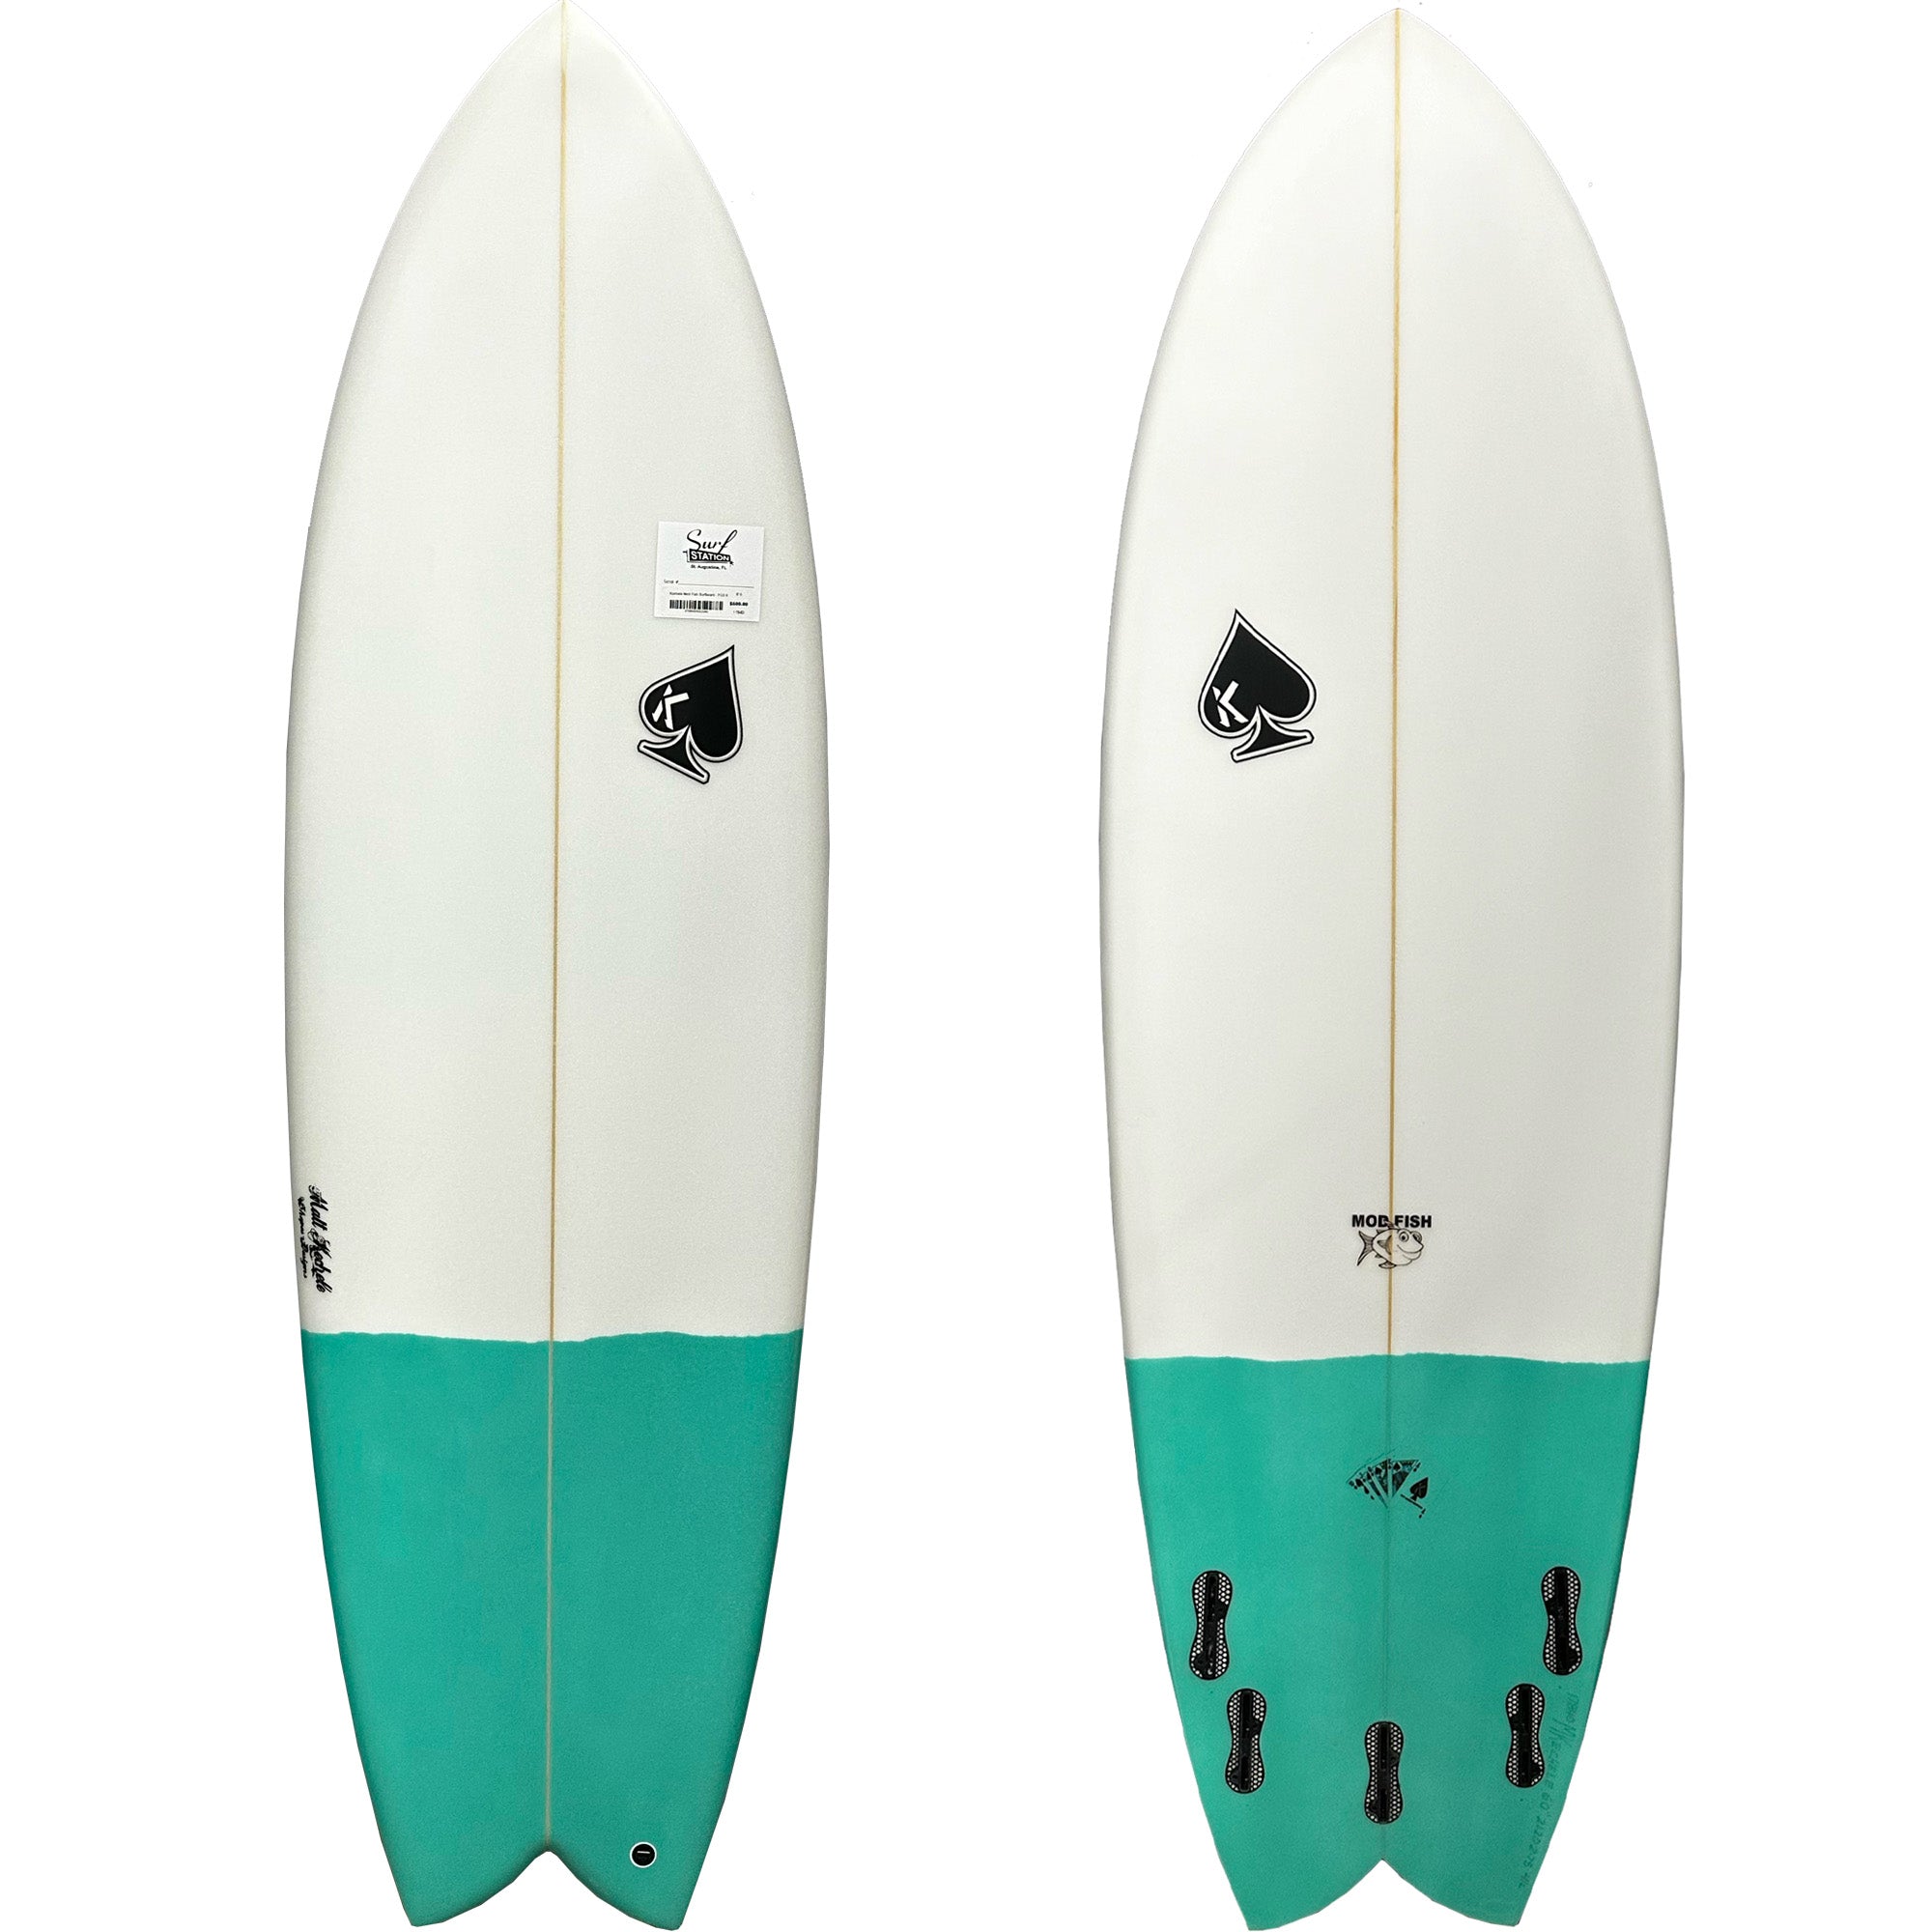 Kechele Mod Fish Surfboard - FCS II